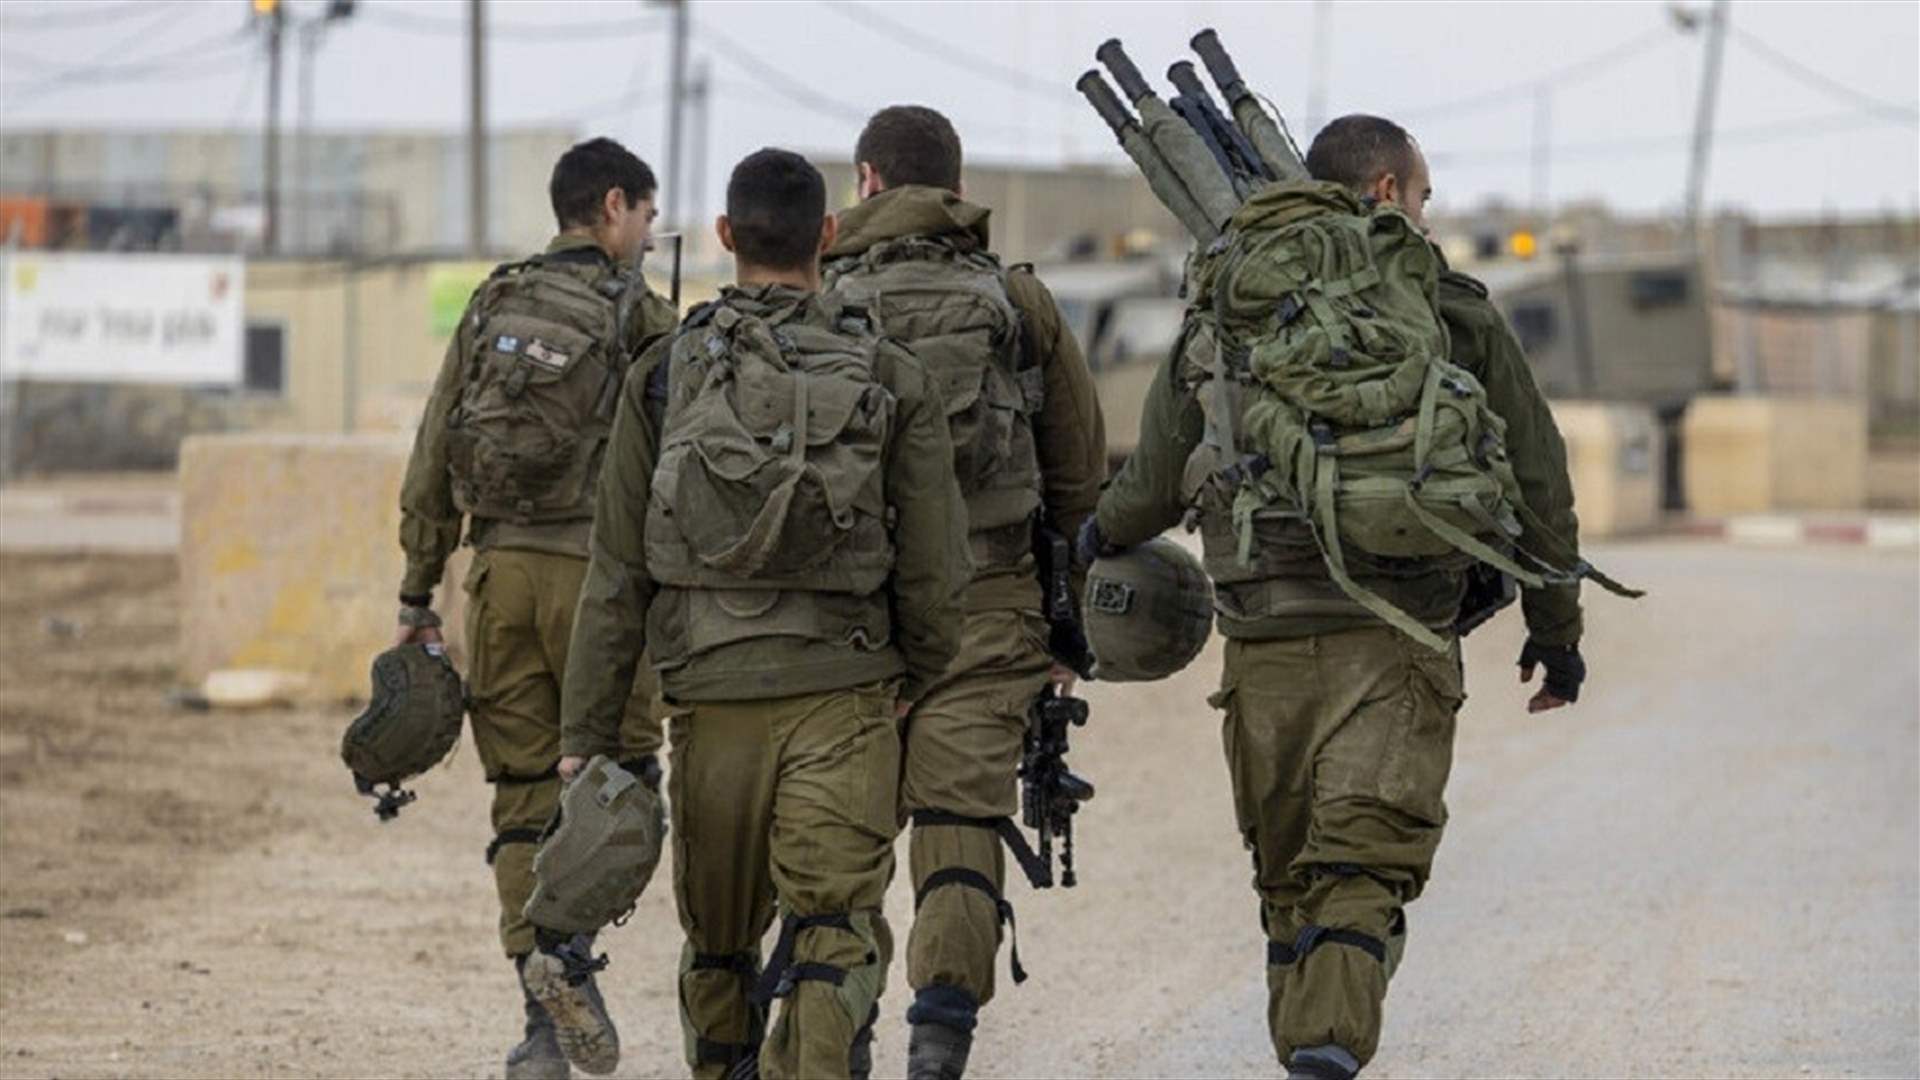 إصابة تسعة جنود إسرائيليين بانفجار ذخيرة في قاعدة عسكرية في صحراء النقب